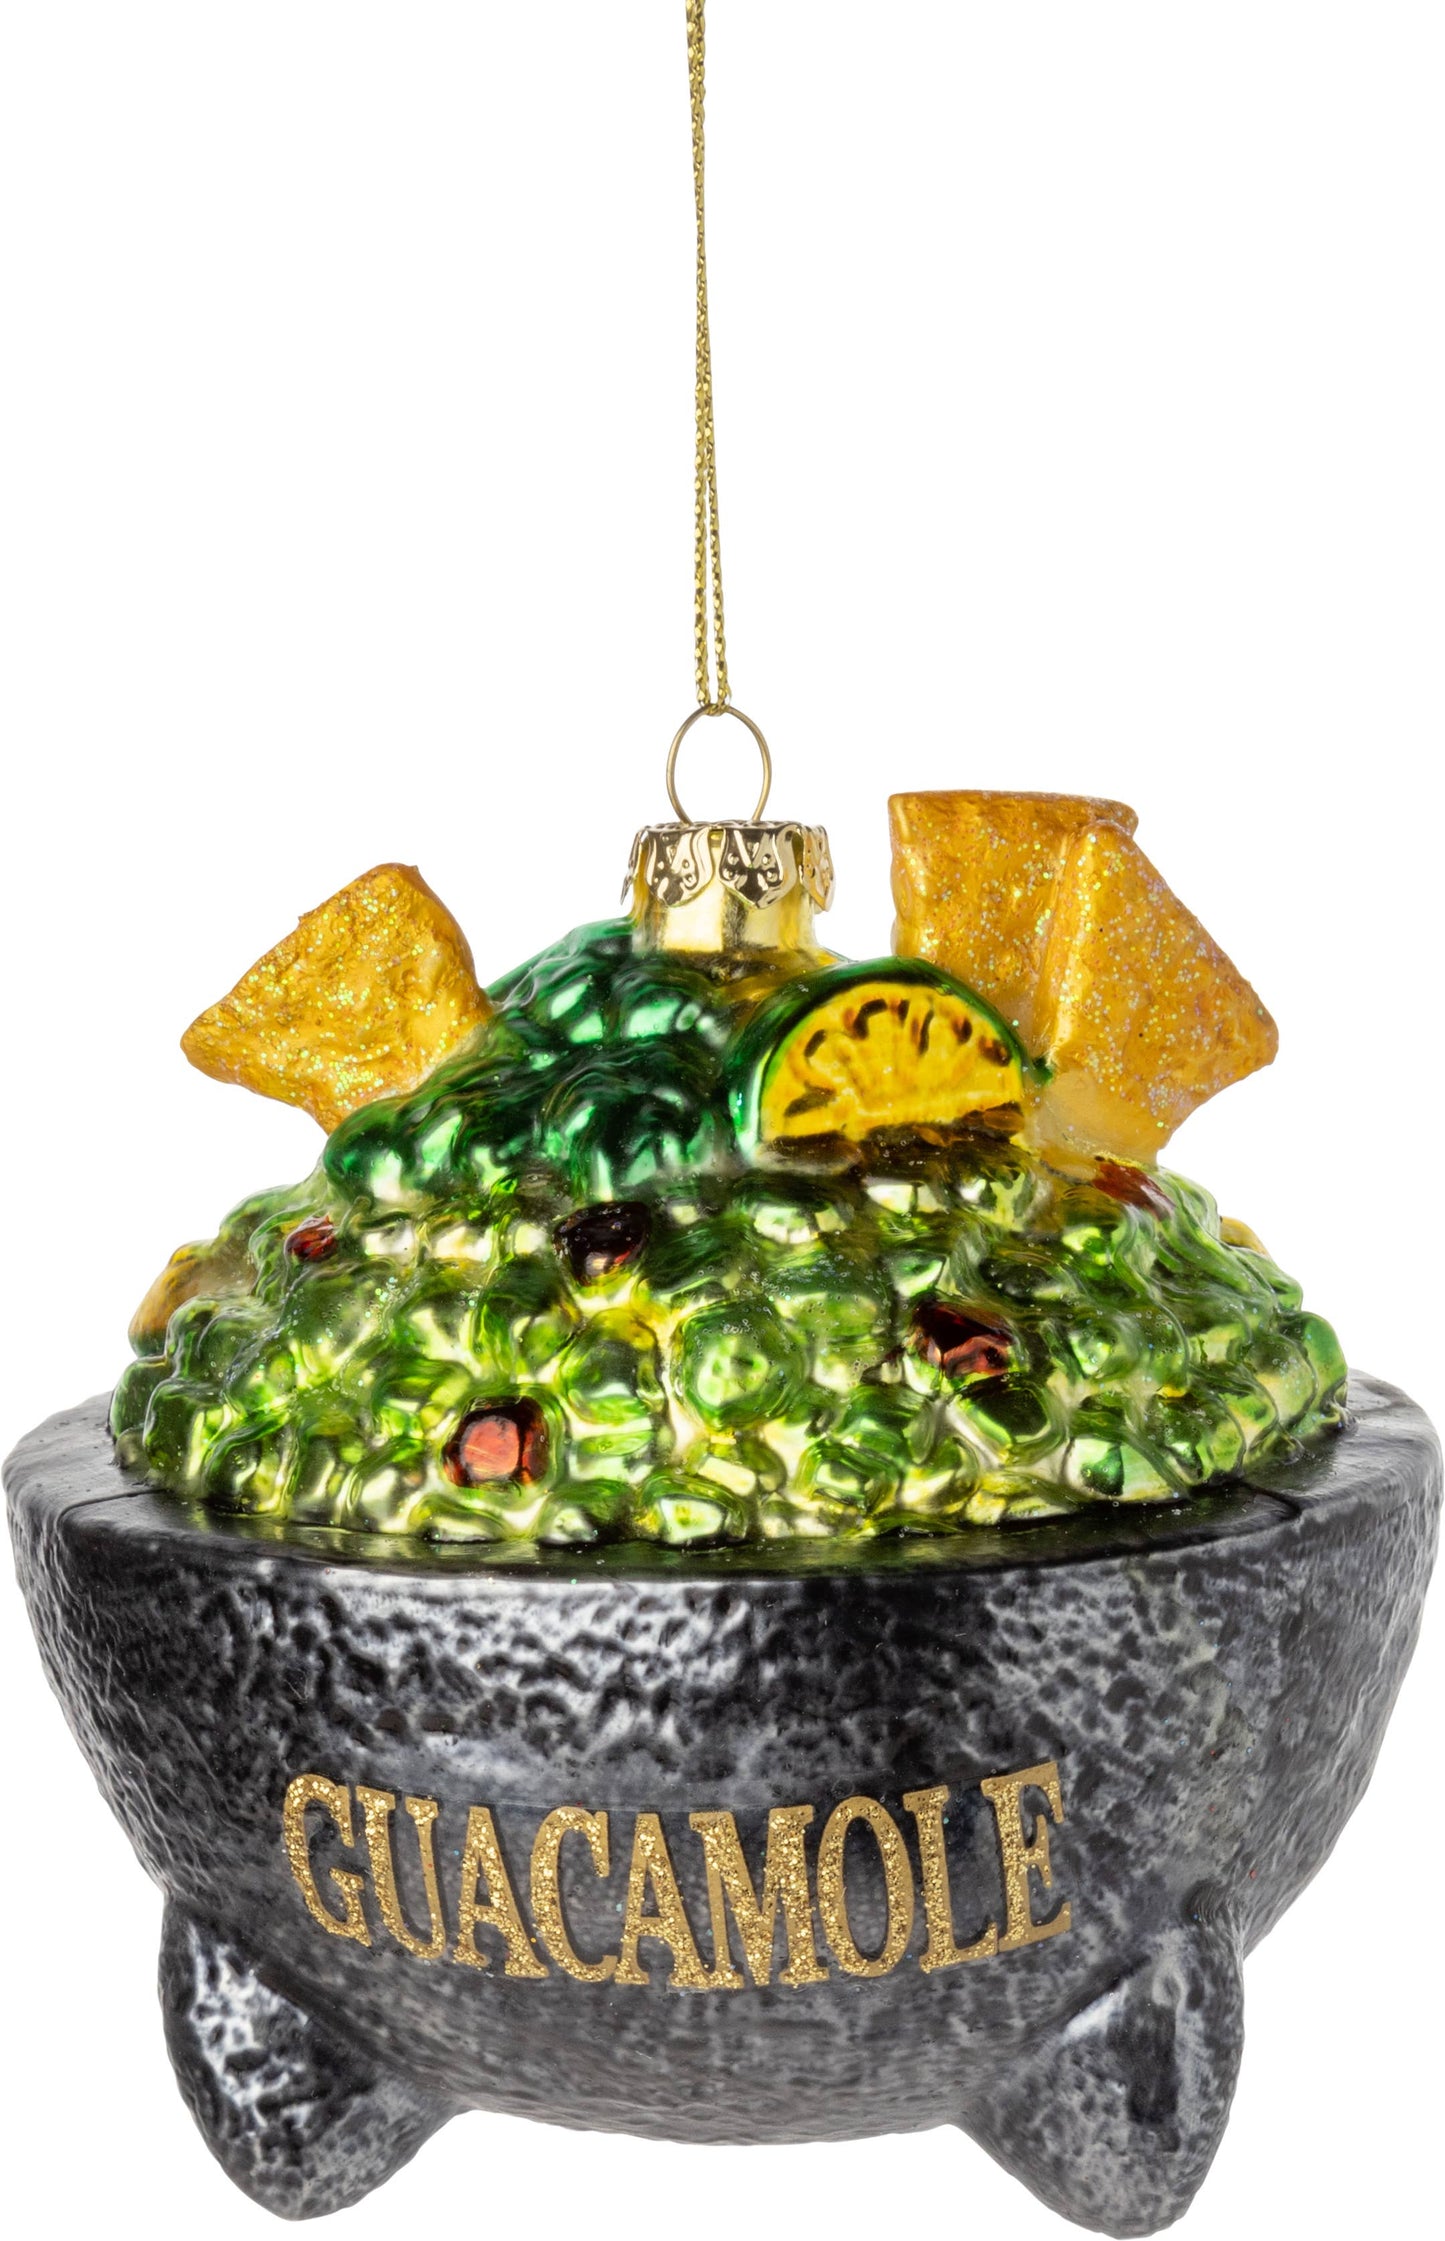 A45255-Gls guacamole bowl ornament,3.5india